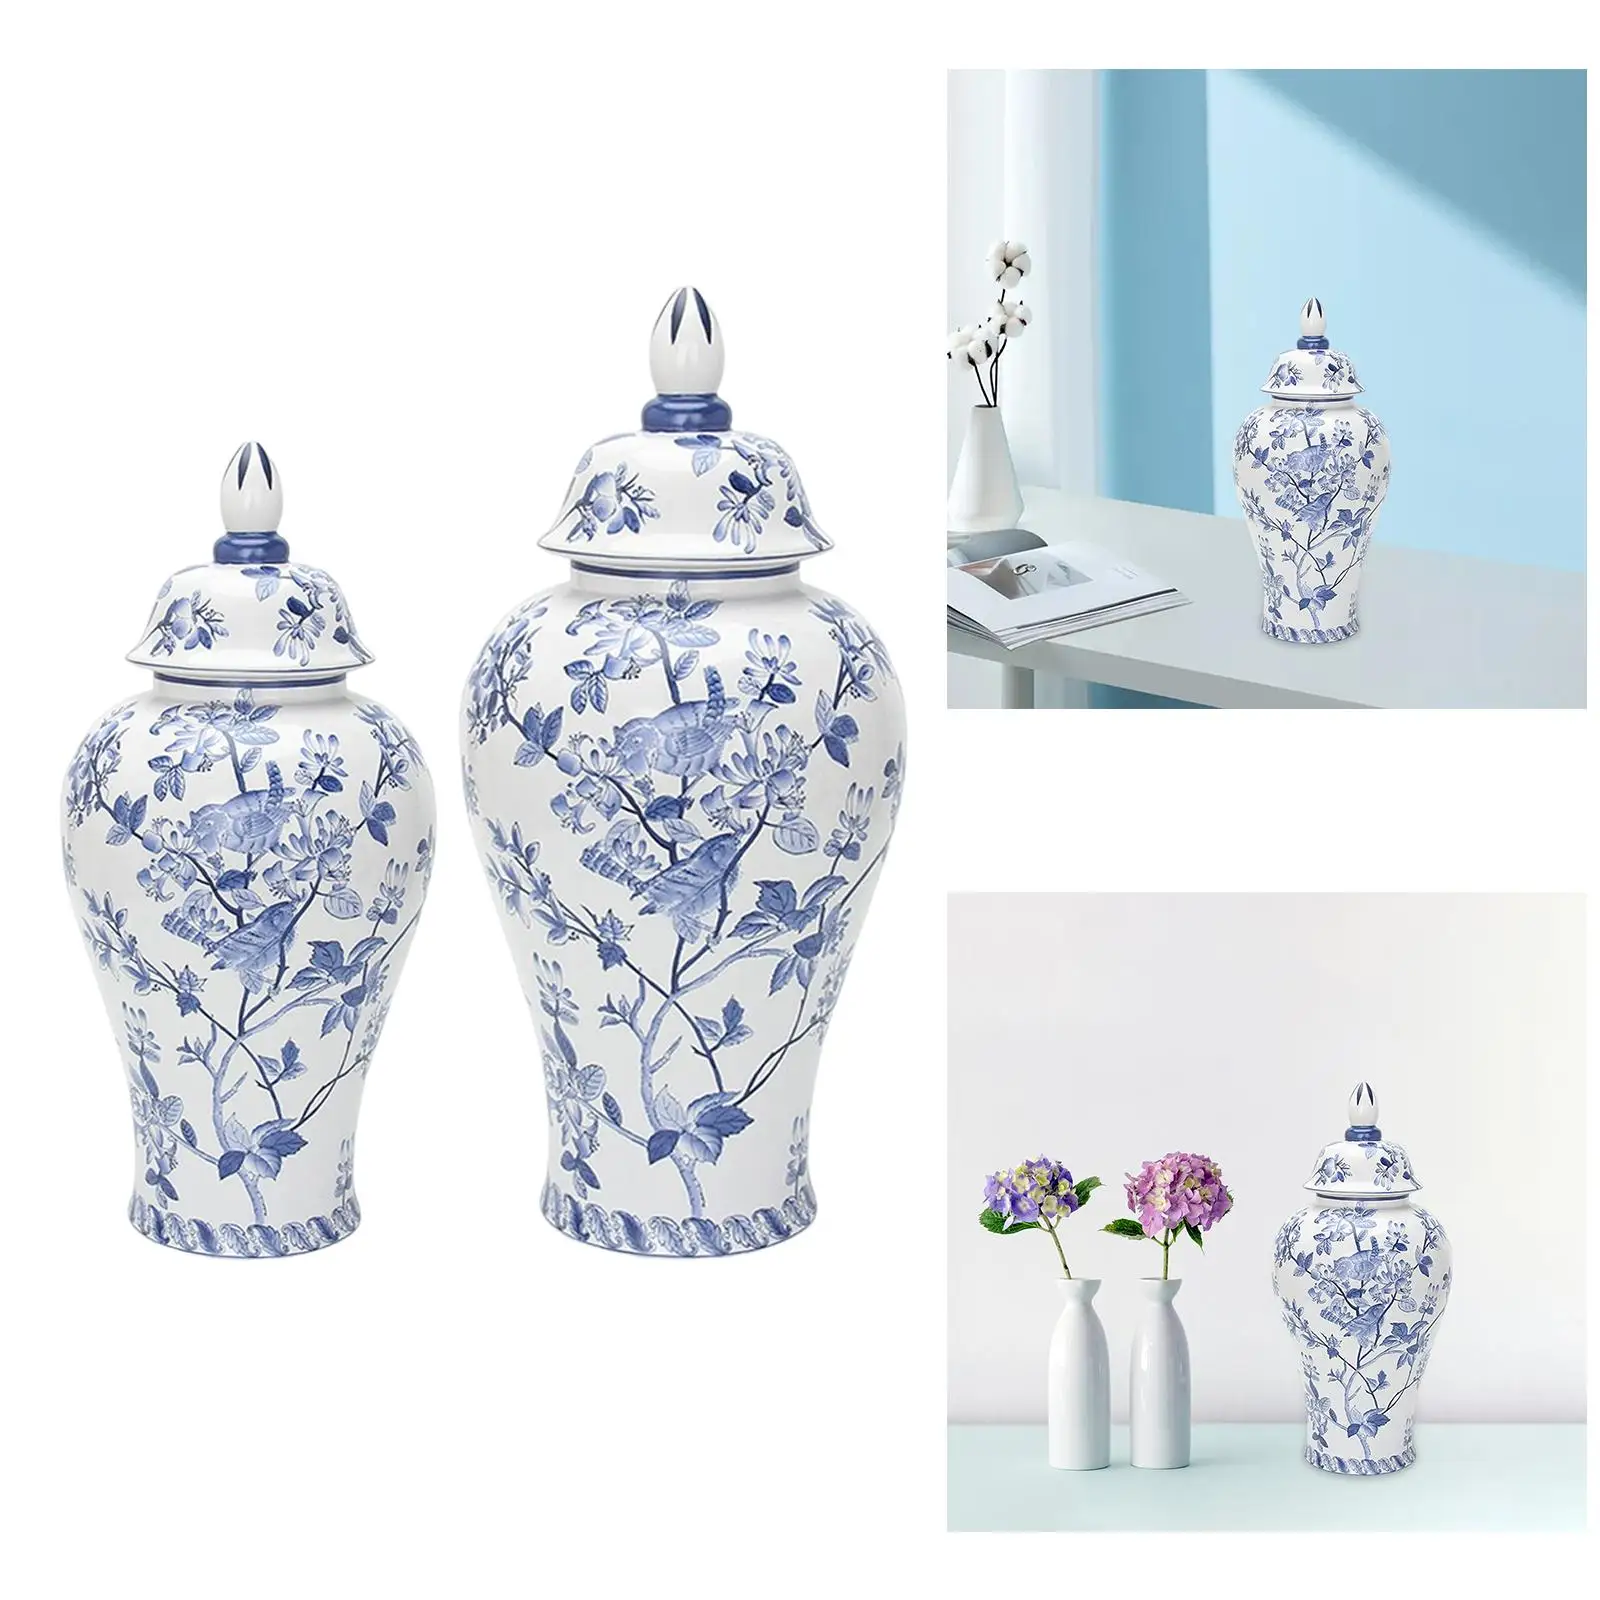 Porcelain Ginger Jar Floral Arrangement Desk Ceramic Flower Vase for Bedroom